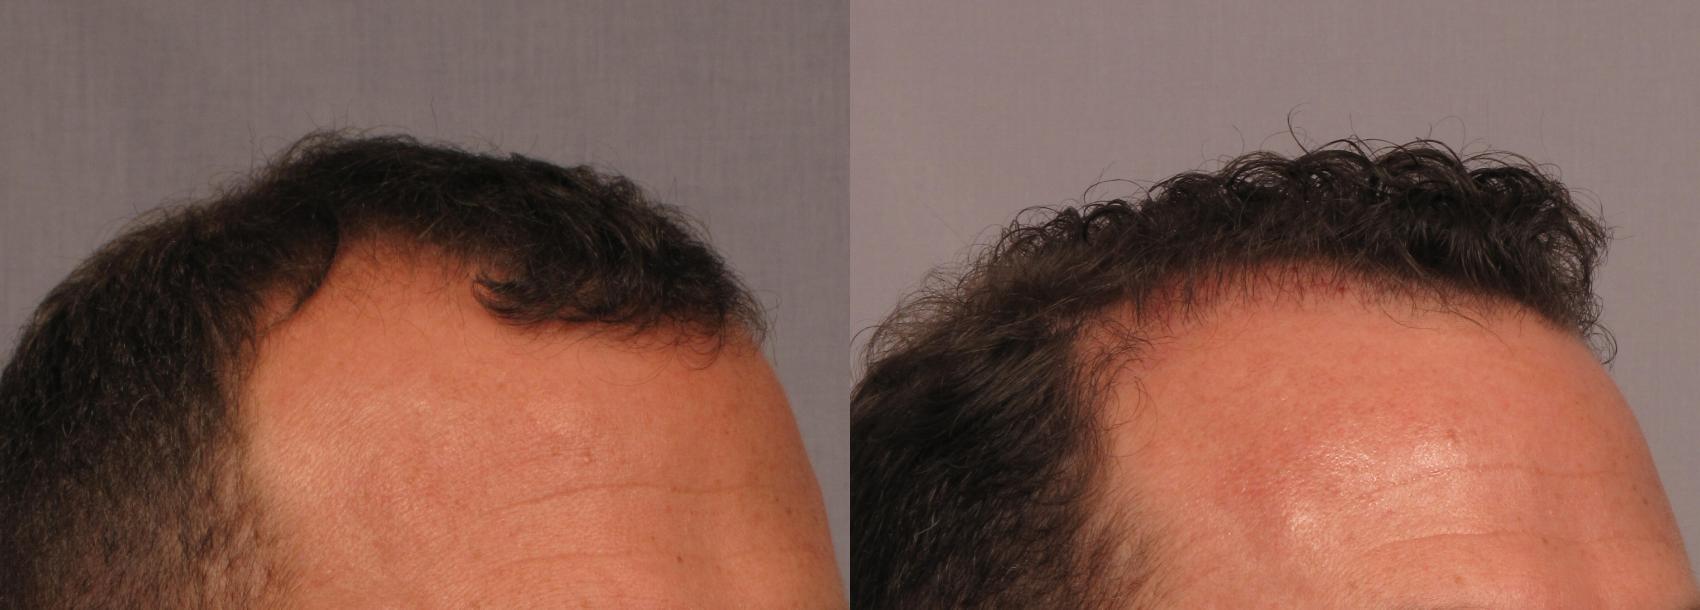 新植发移植前后病例298视图3那不勒斯和佛罗里达州迈尔斯堡的视图